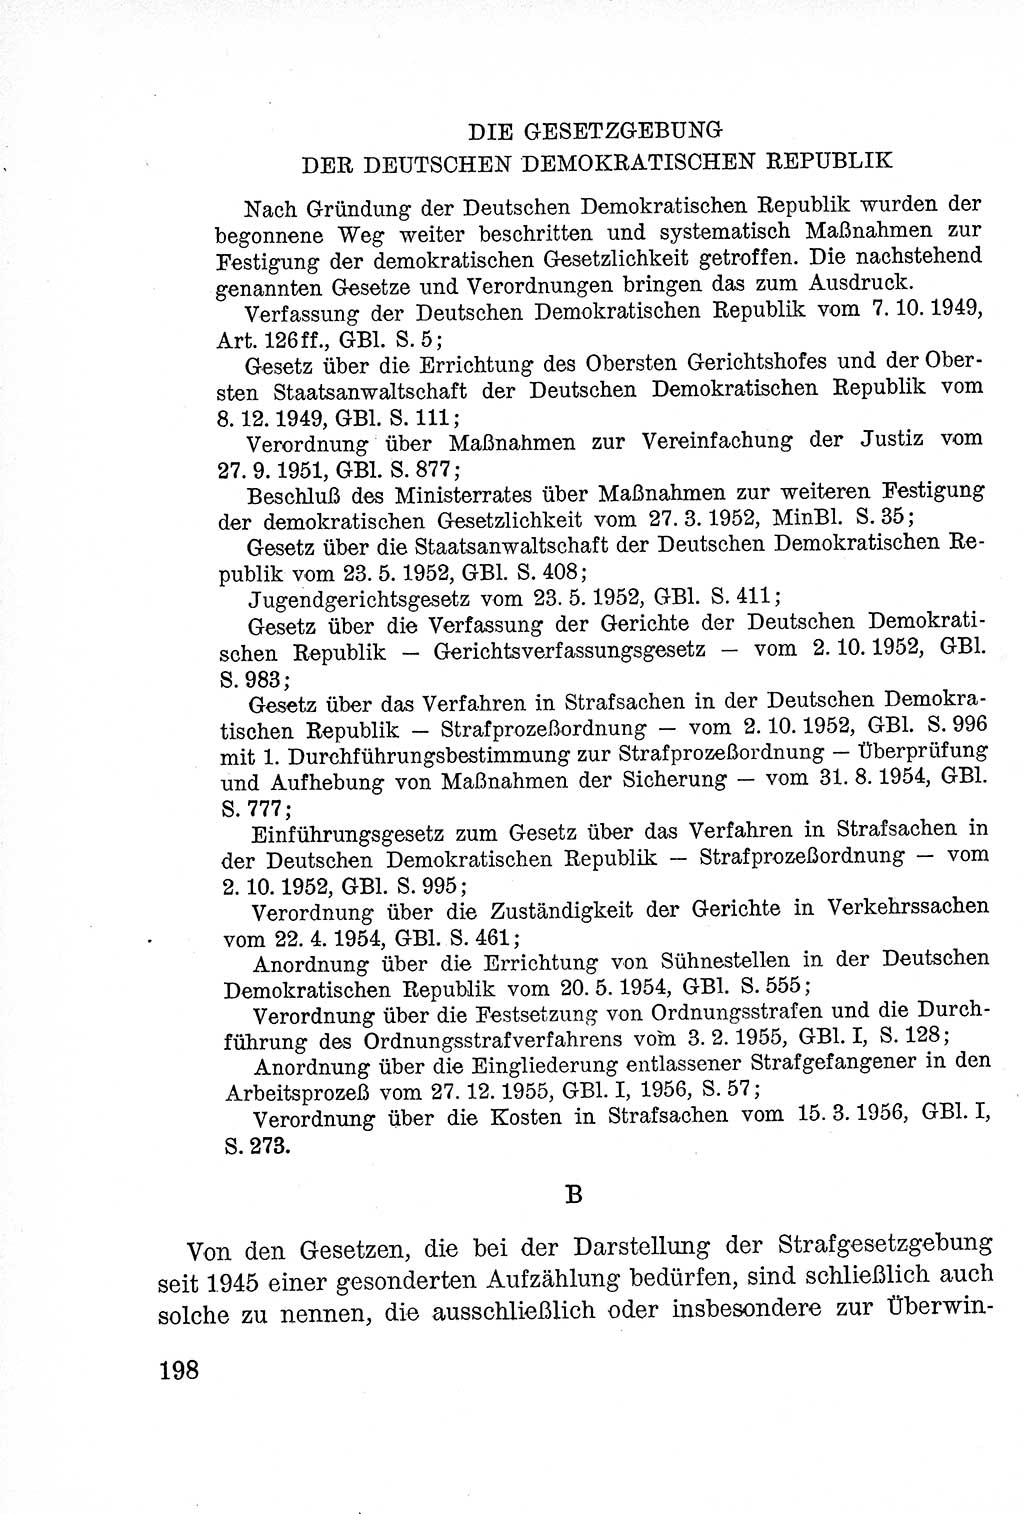 Lehrbuch des Strafrechts der Deutschen Demokratischen Republik (DDR), Allgemeiner Teil 1957, Seite 198 (Lb. Strafr. DDR AT 1957, S. 198)